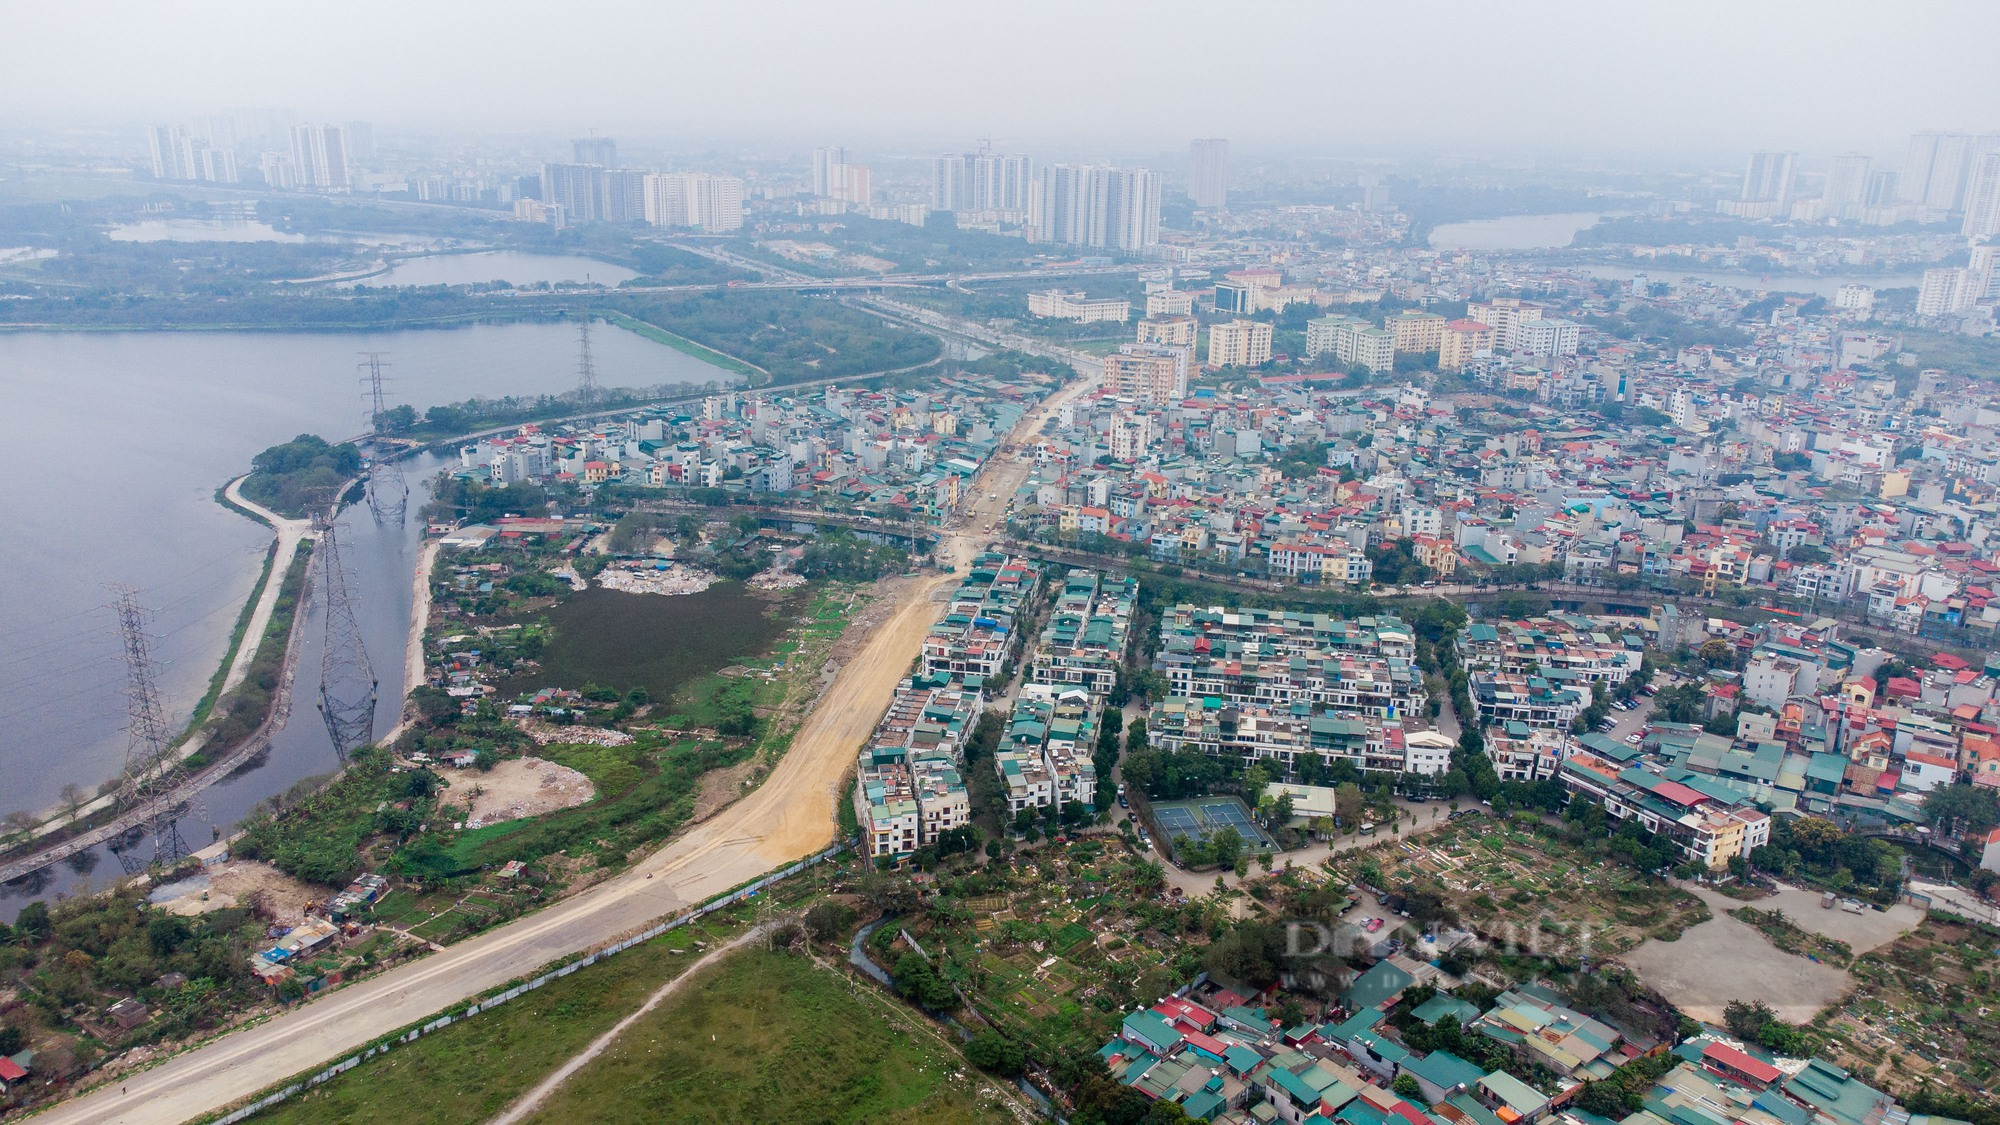 Cận cảnh khu đất vàng ở Hà Nội bị chủ đầu tư bỏ hoang gần 2 thập kỷ - Ảnh 3.